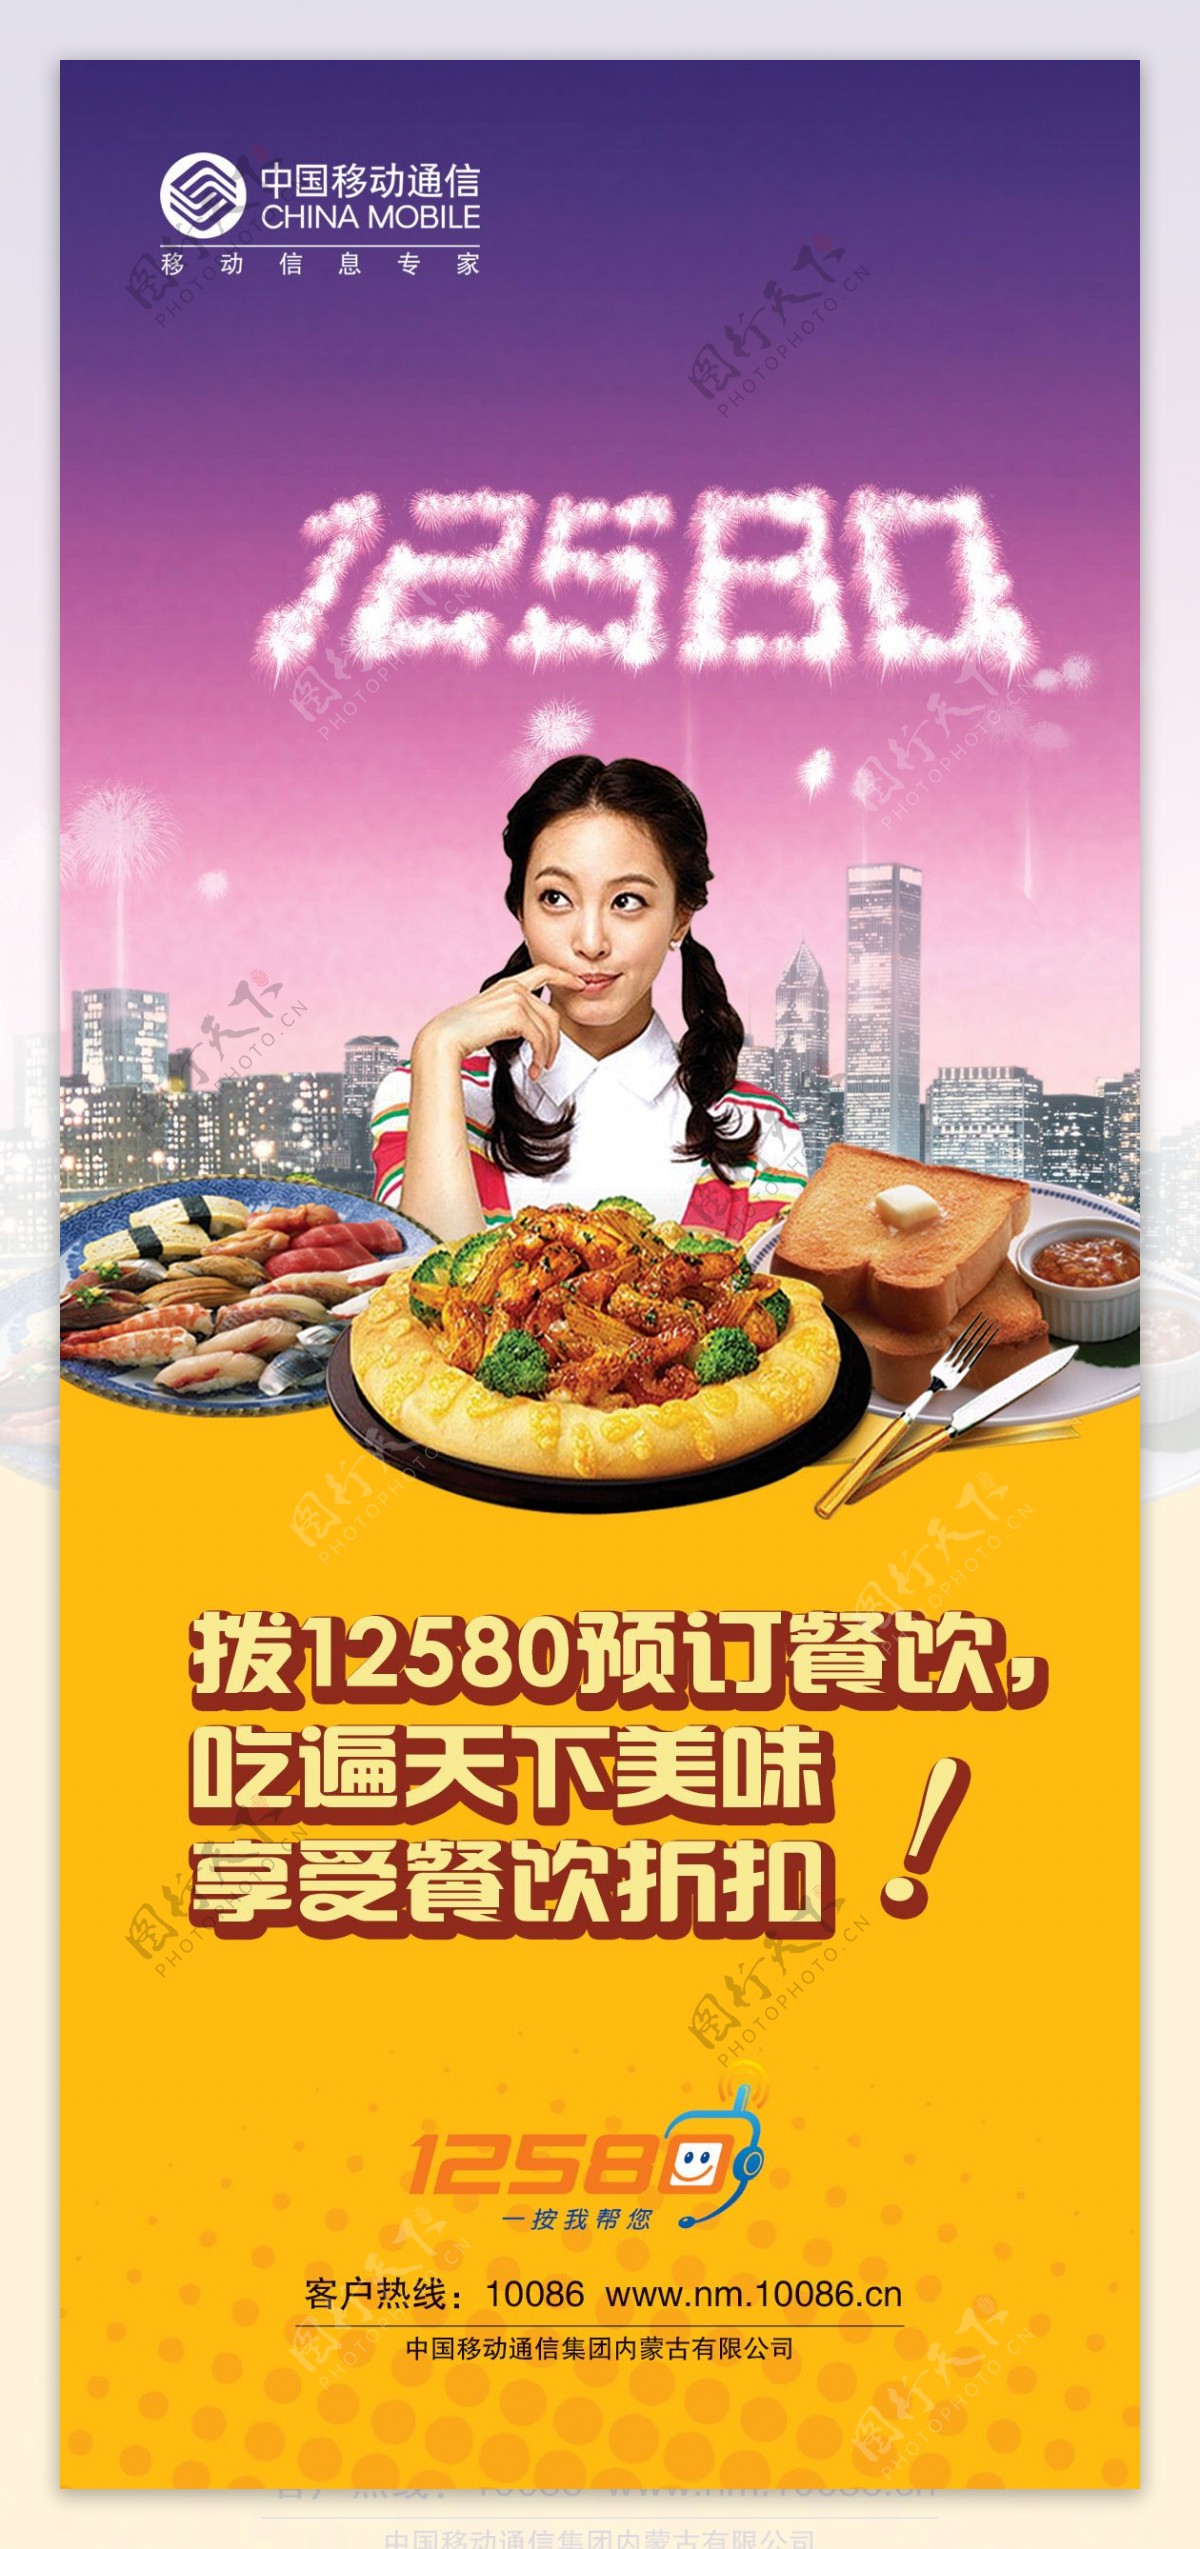 中国移动12580订餐海报PSD素